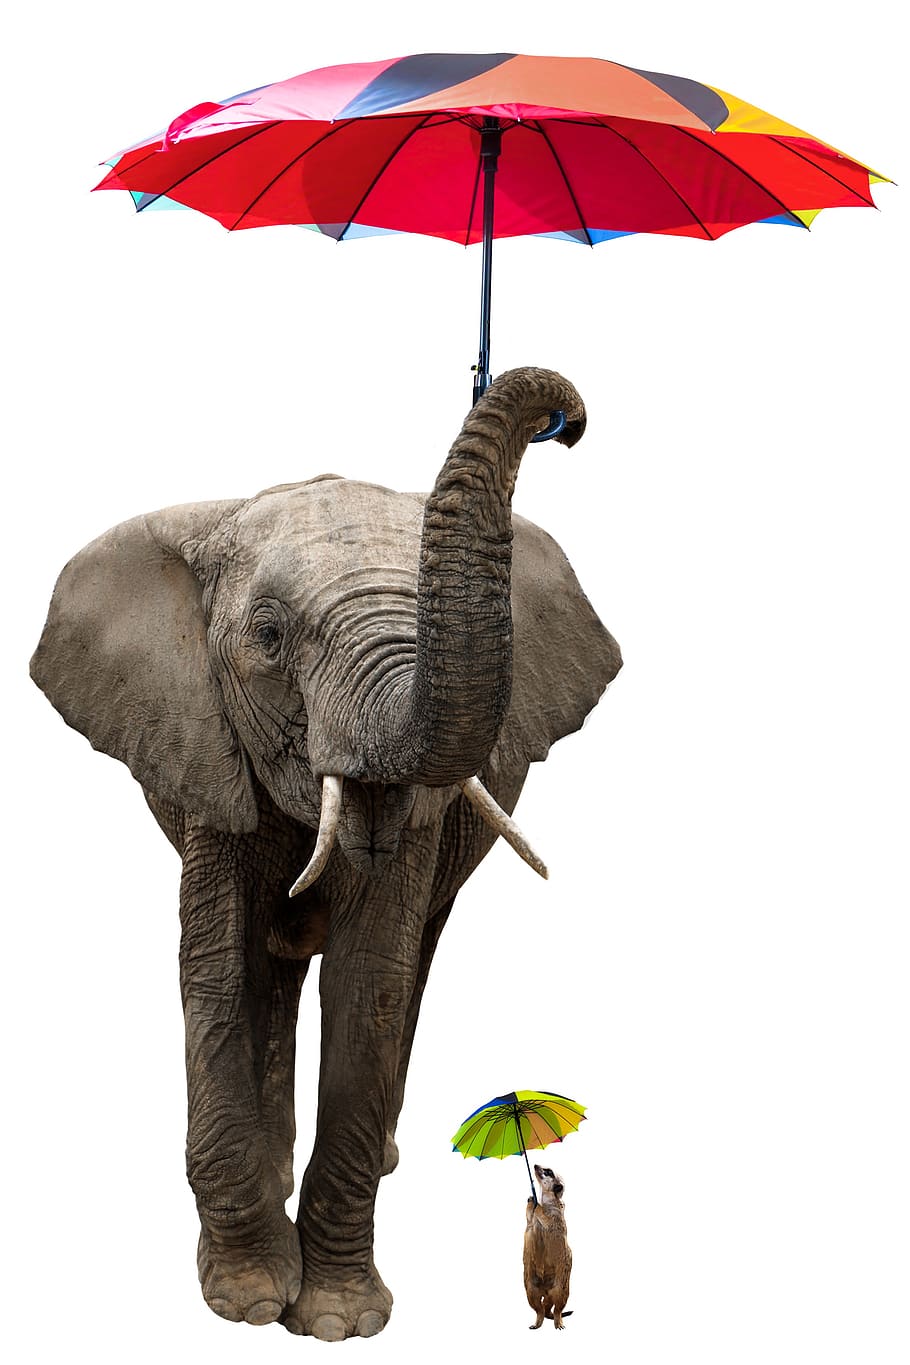 animais, elefante, meerkat, paquiderme, guarda chuva, guarda sol, isolado, proteção solar, proteção contra chuva, guarda-chuva